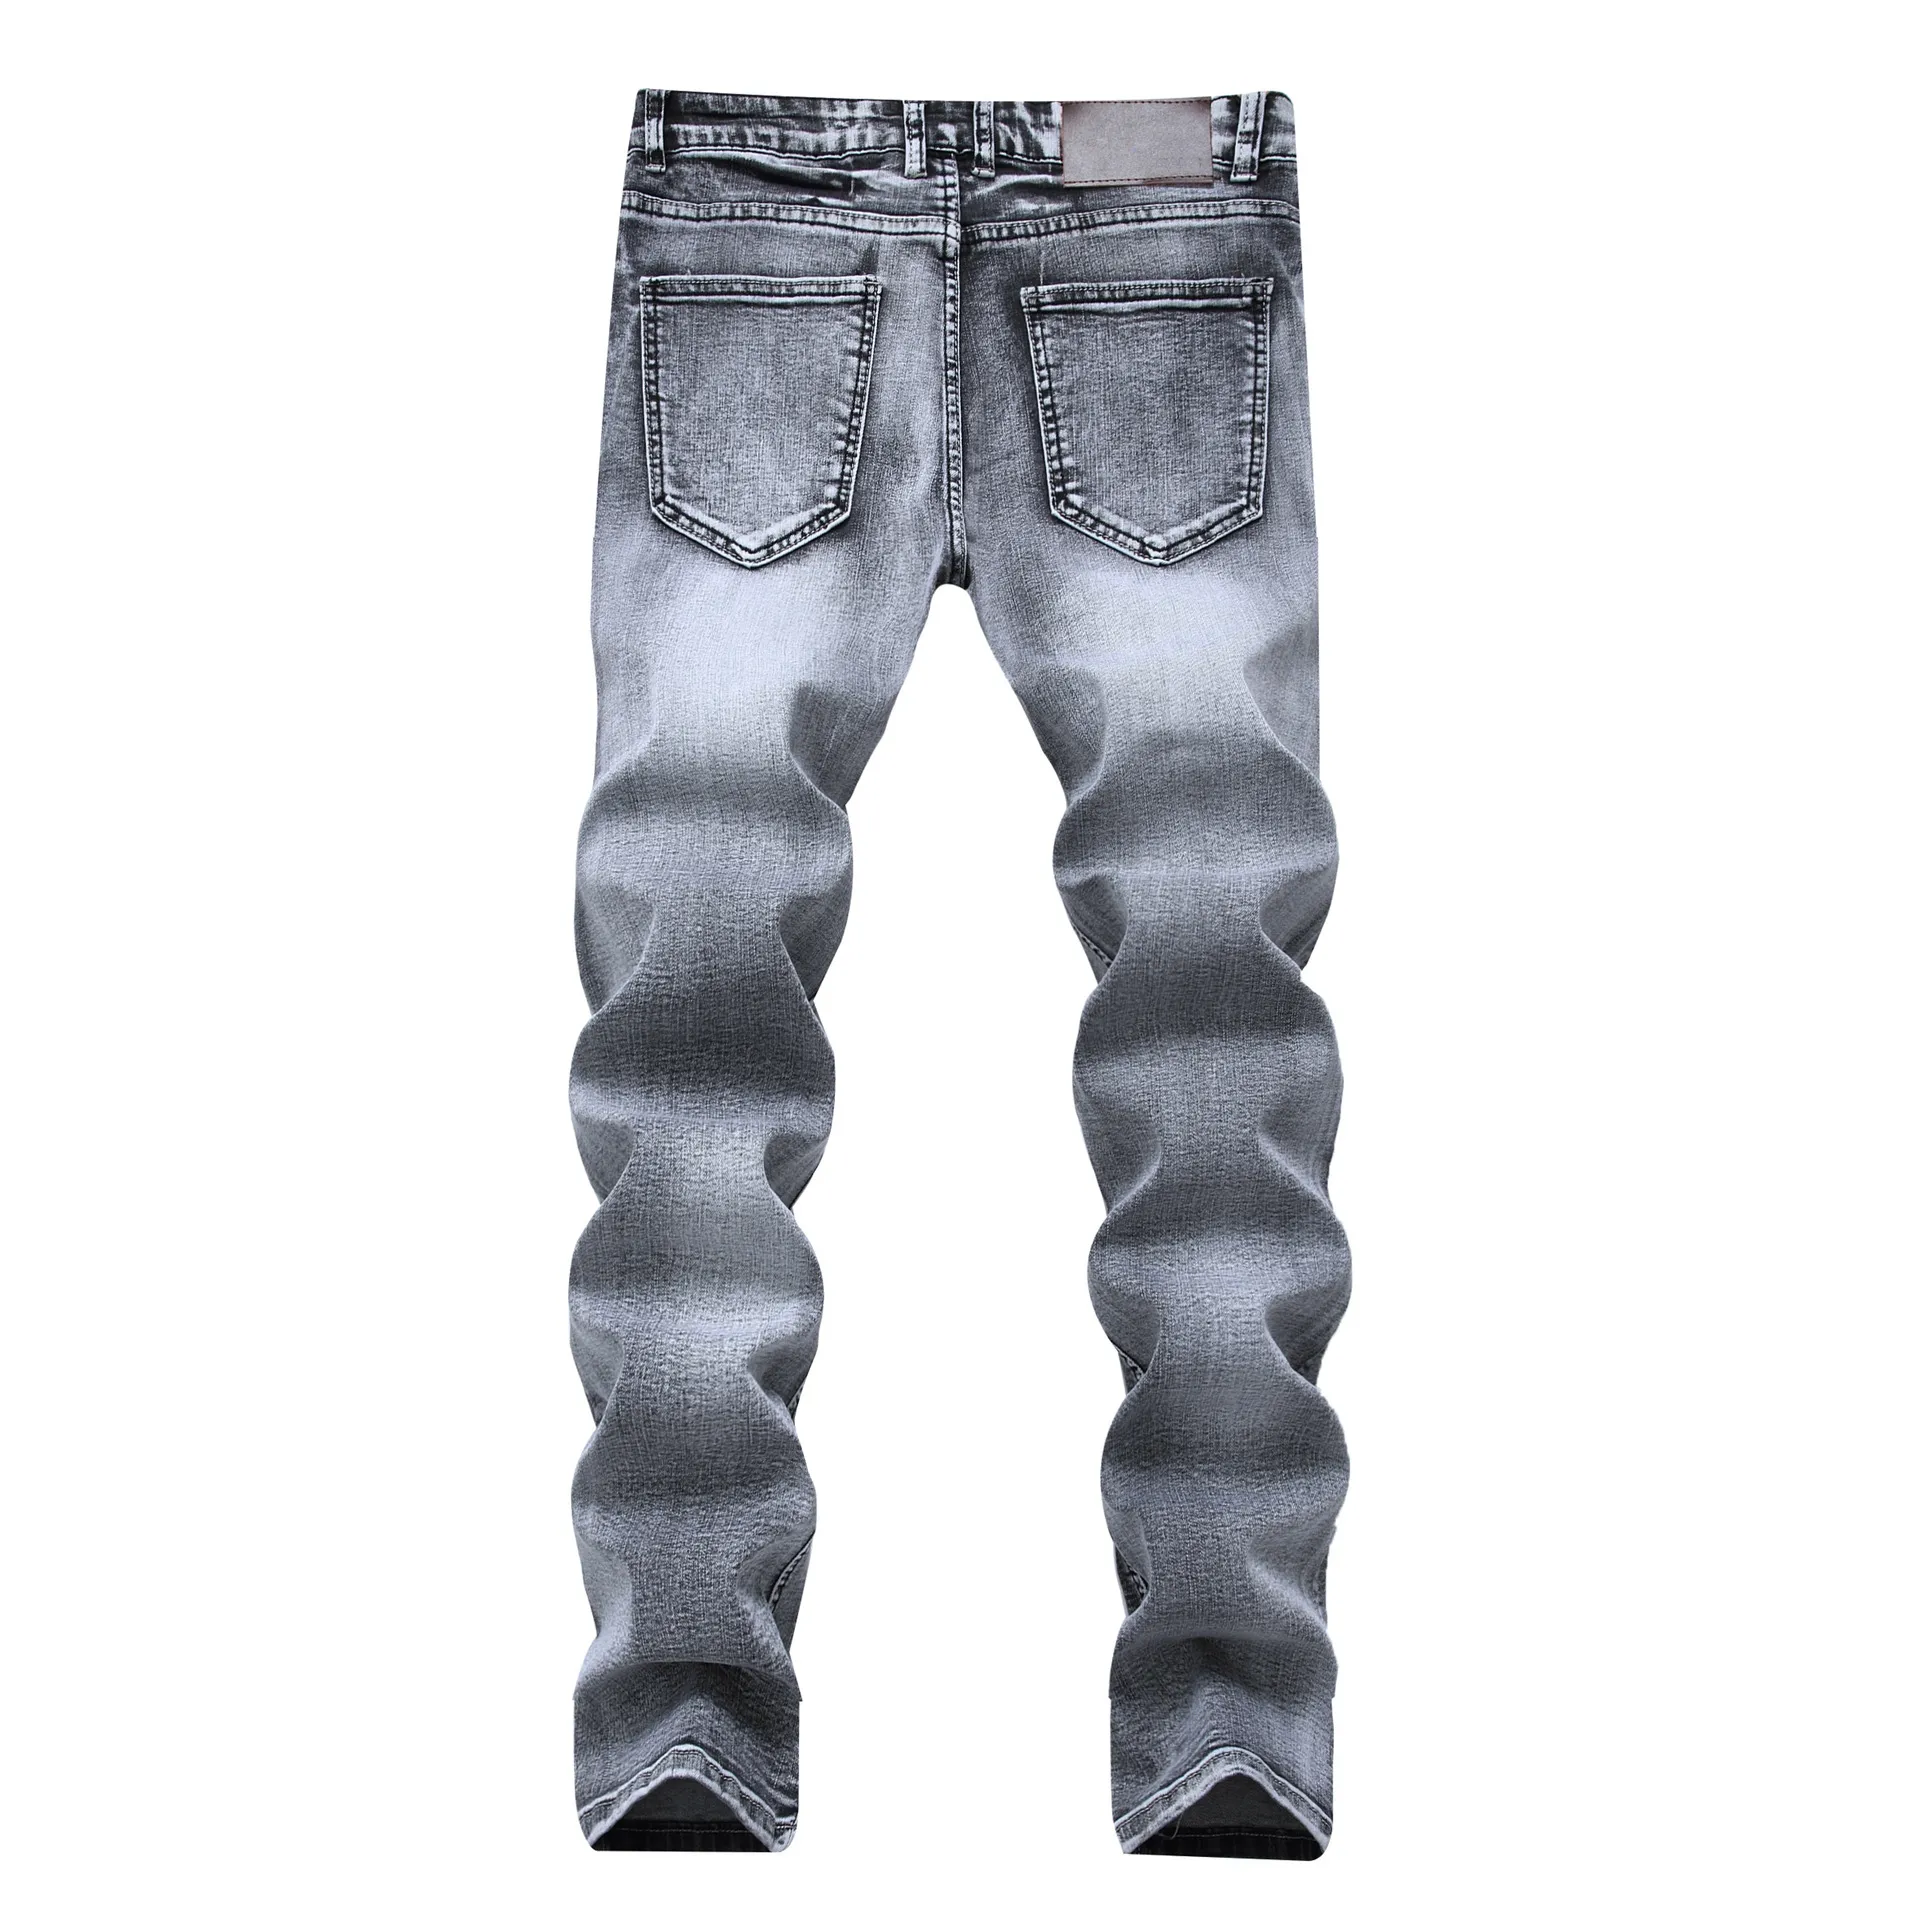 Pantaloni jeans grigi da uomo Nuovi jeans dritti slim fit firmati di marca per uomo Pantaloni jeans normali in denim casual in cotone di alta qualità262k